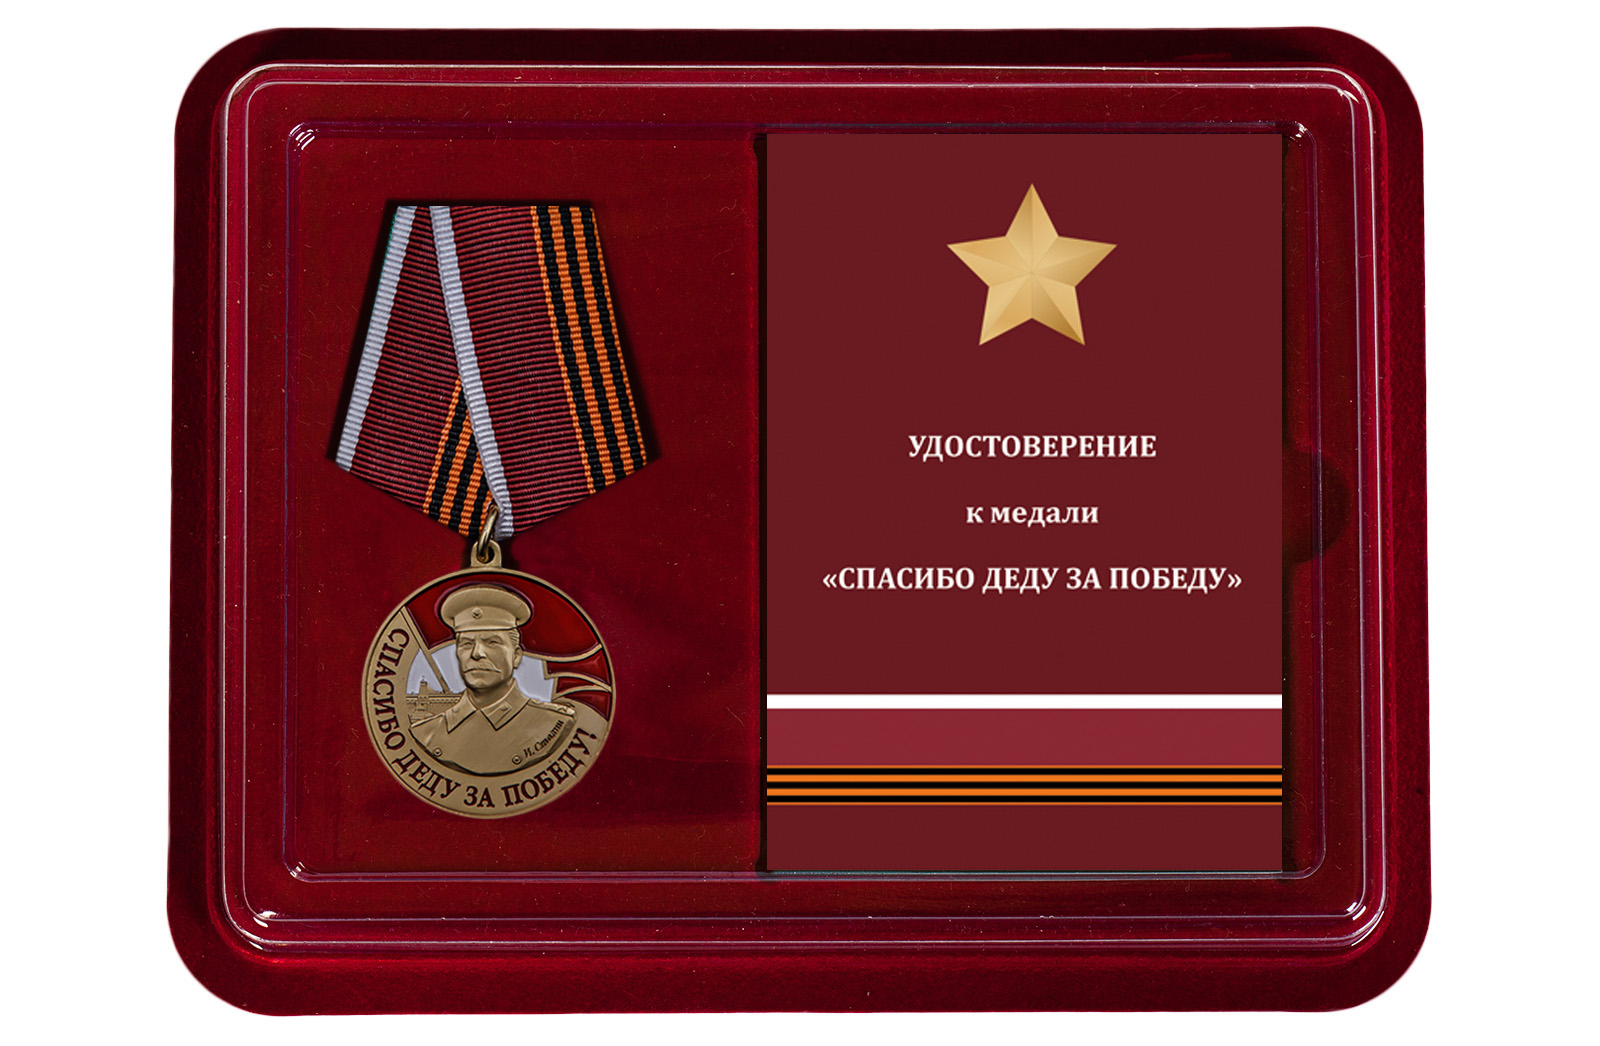 Купить медаль со Сталиным Спасибо деду за Победу в подарок